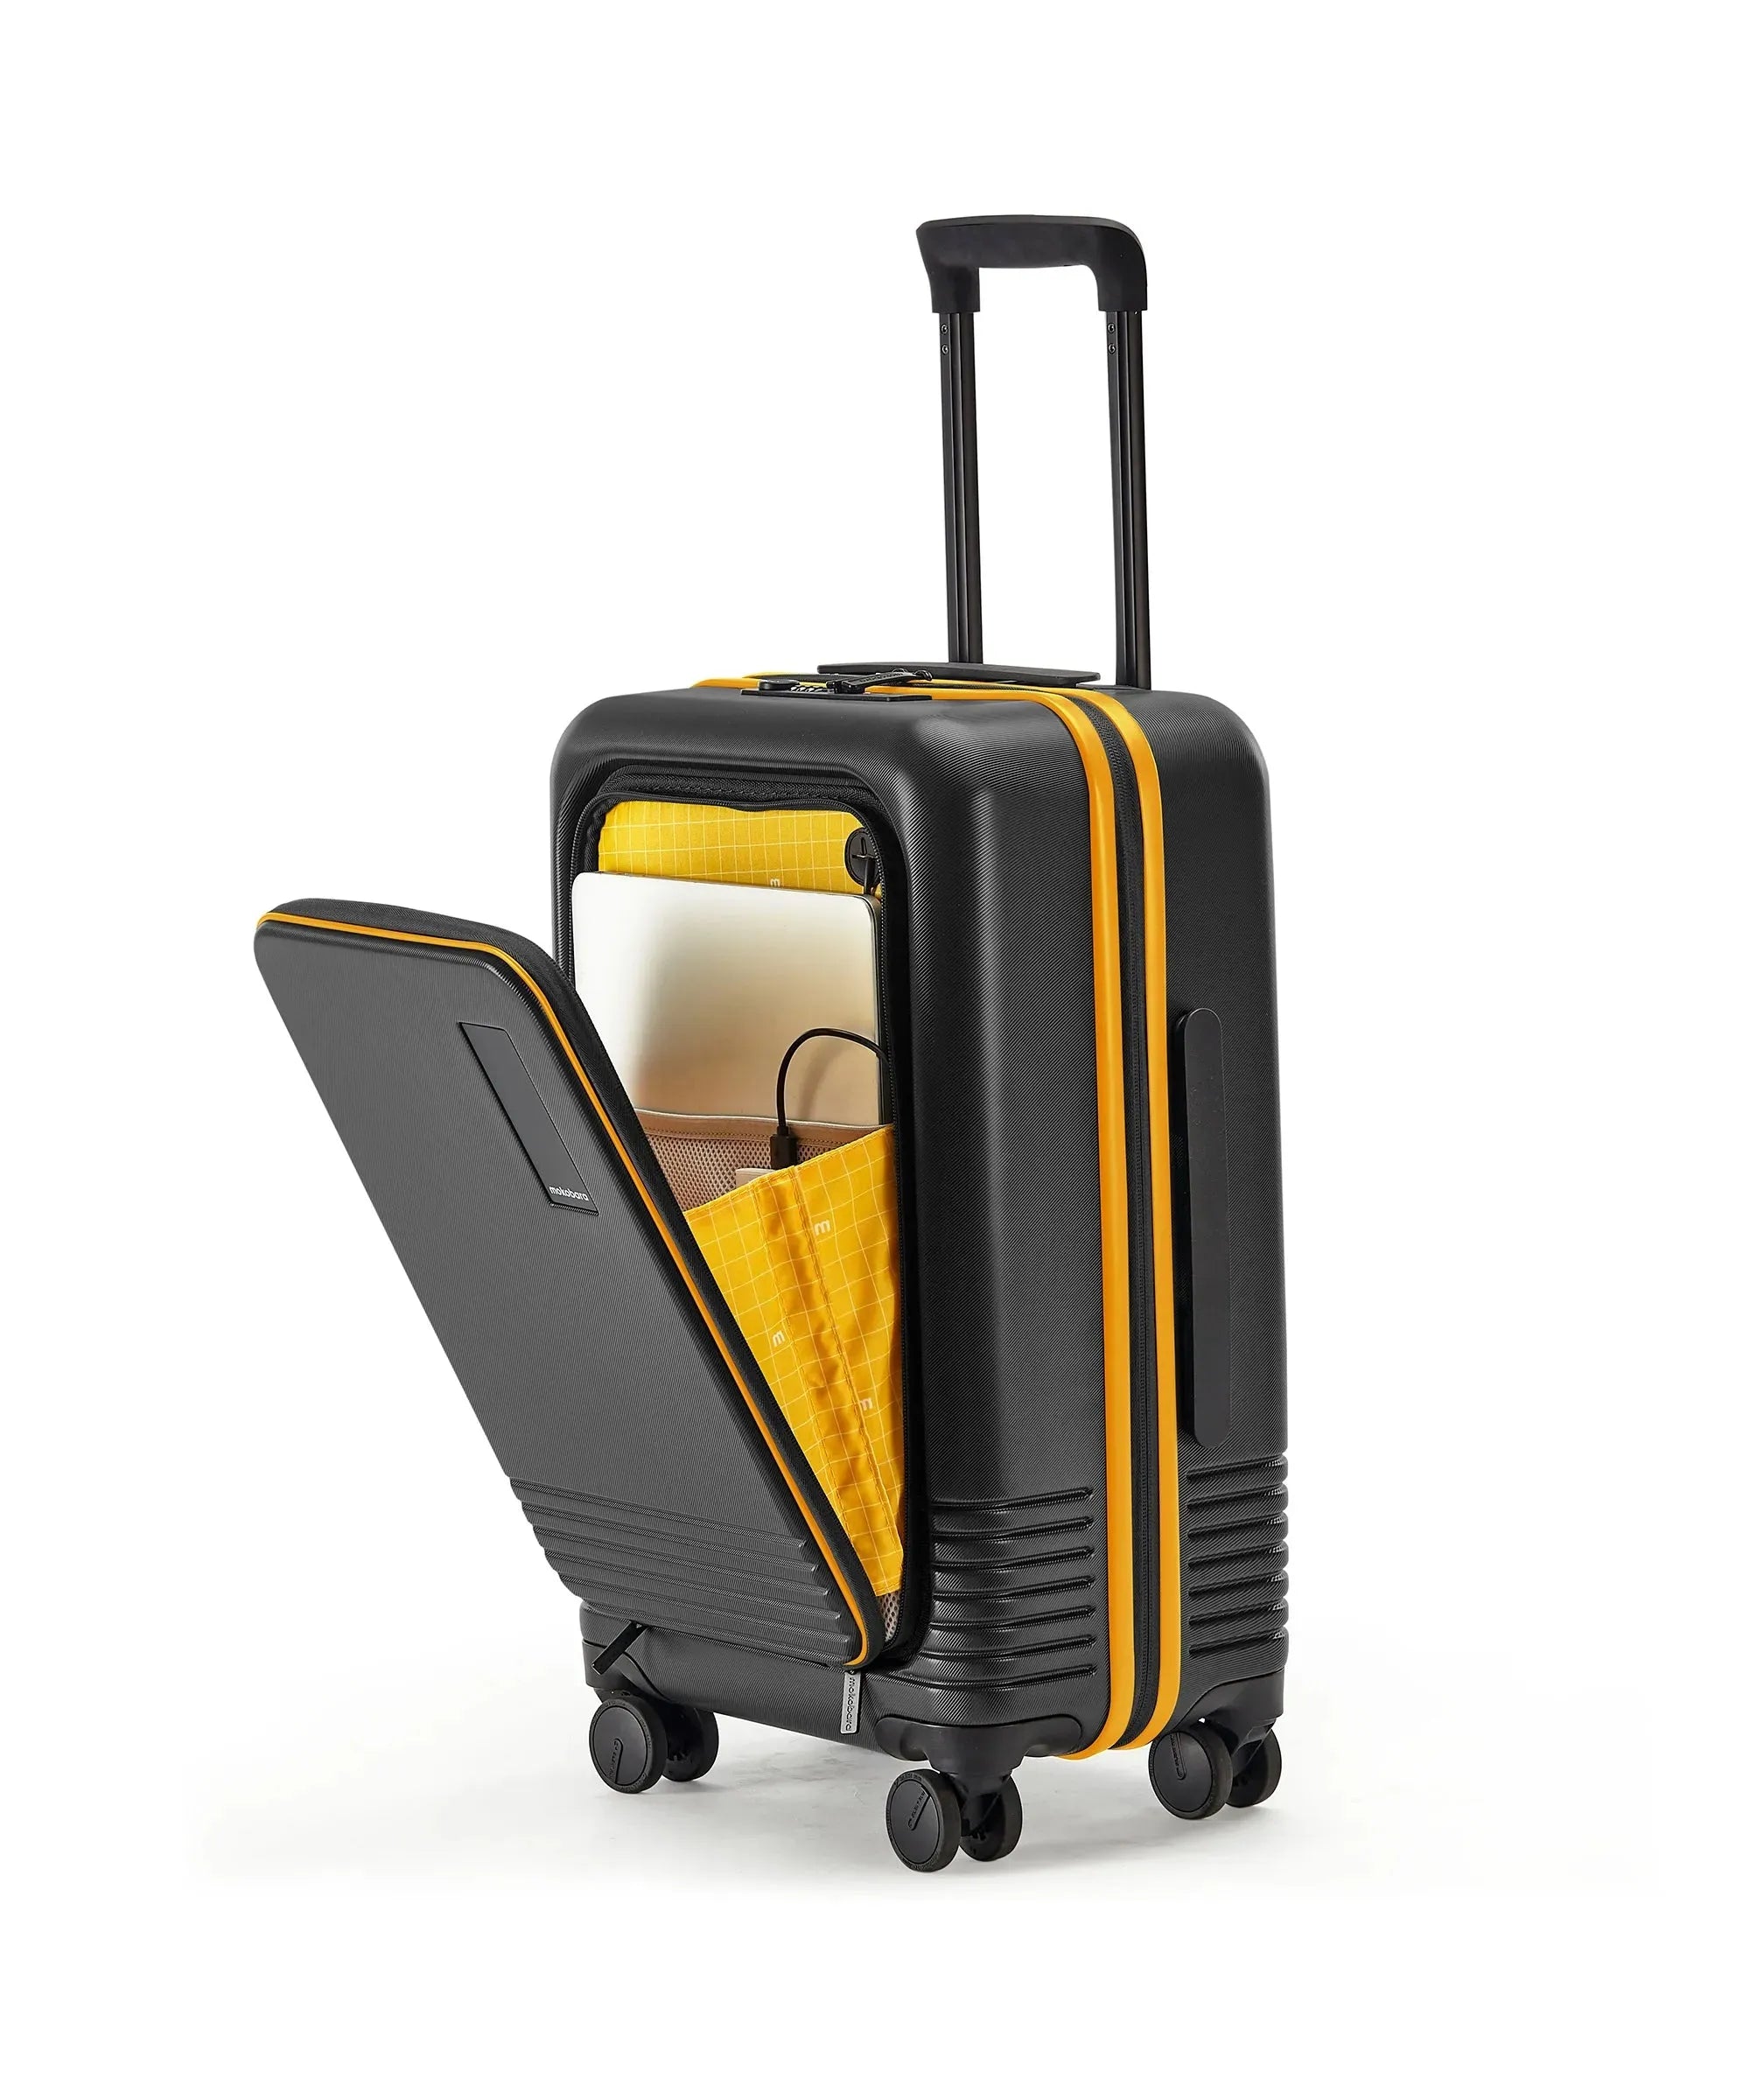 बिक्री के लिए नई और पुरानी सूटकेस | Facebook Marketplace | Facebook